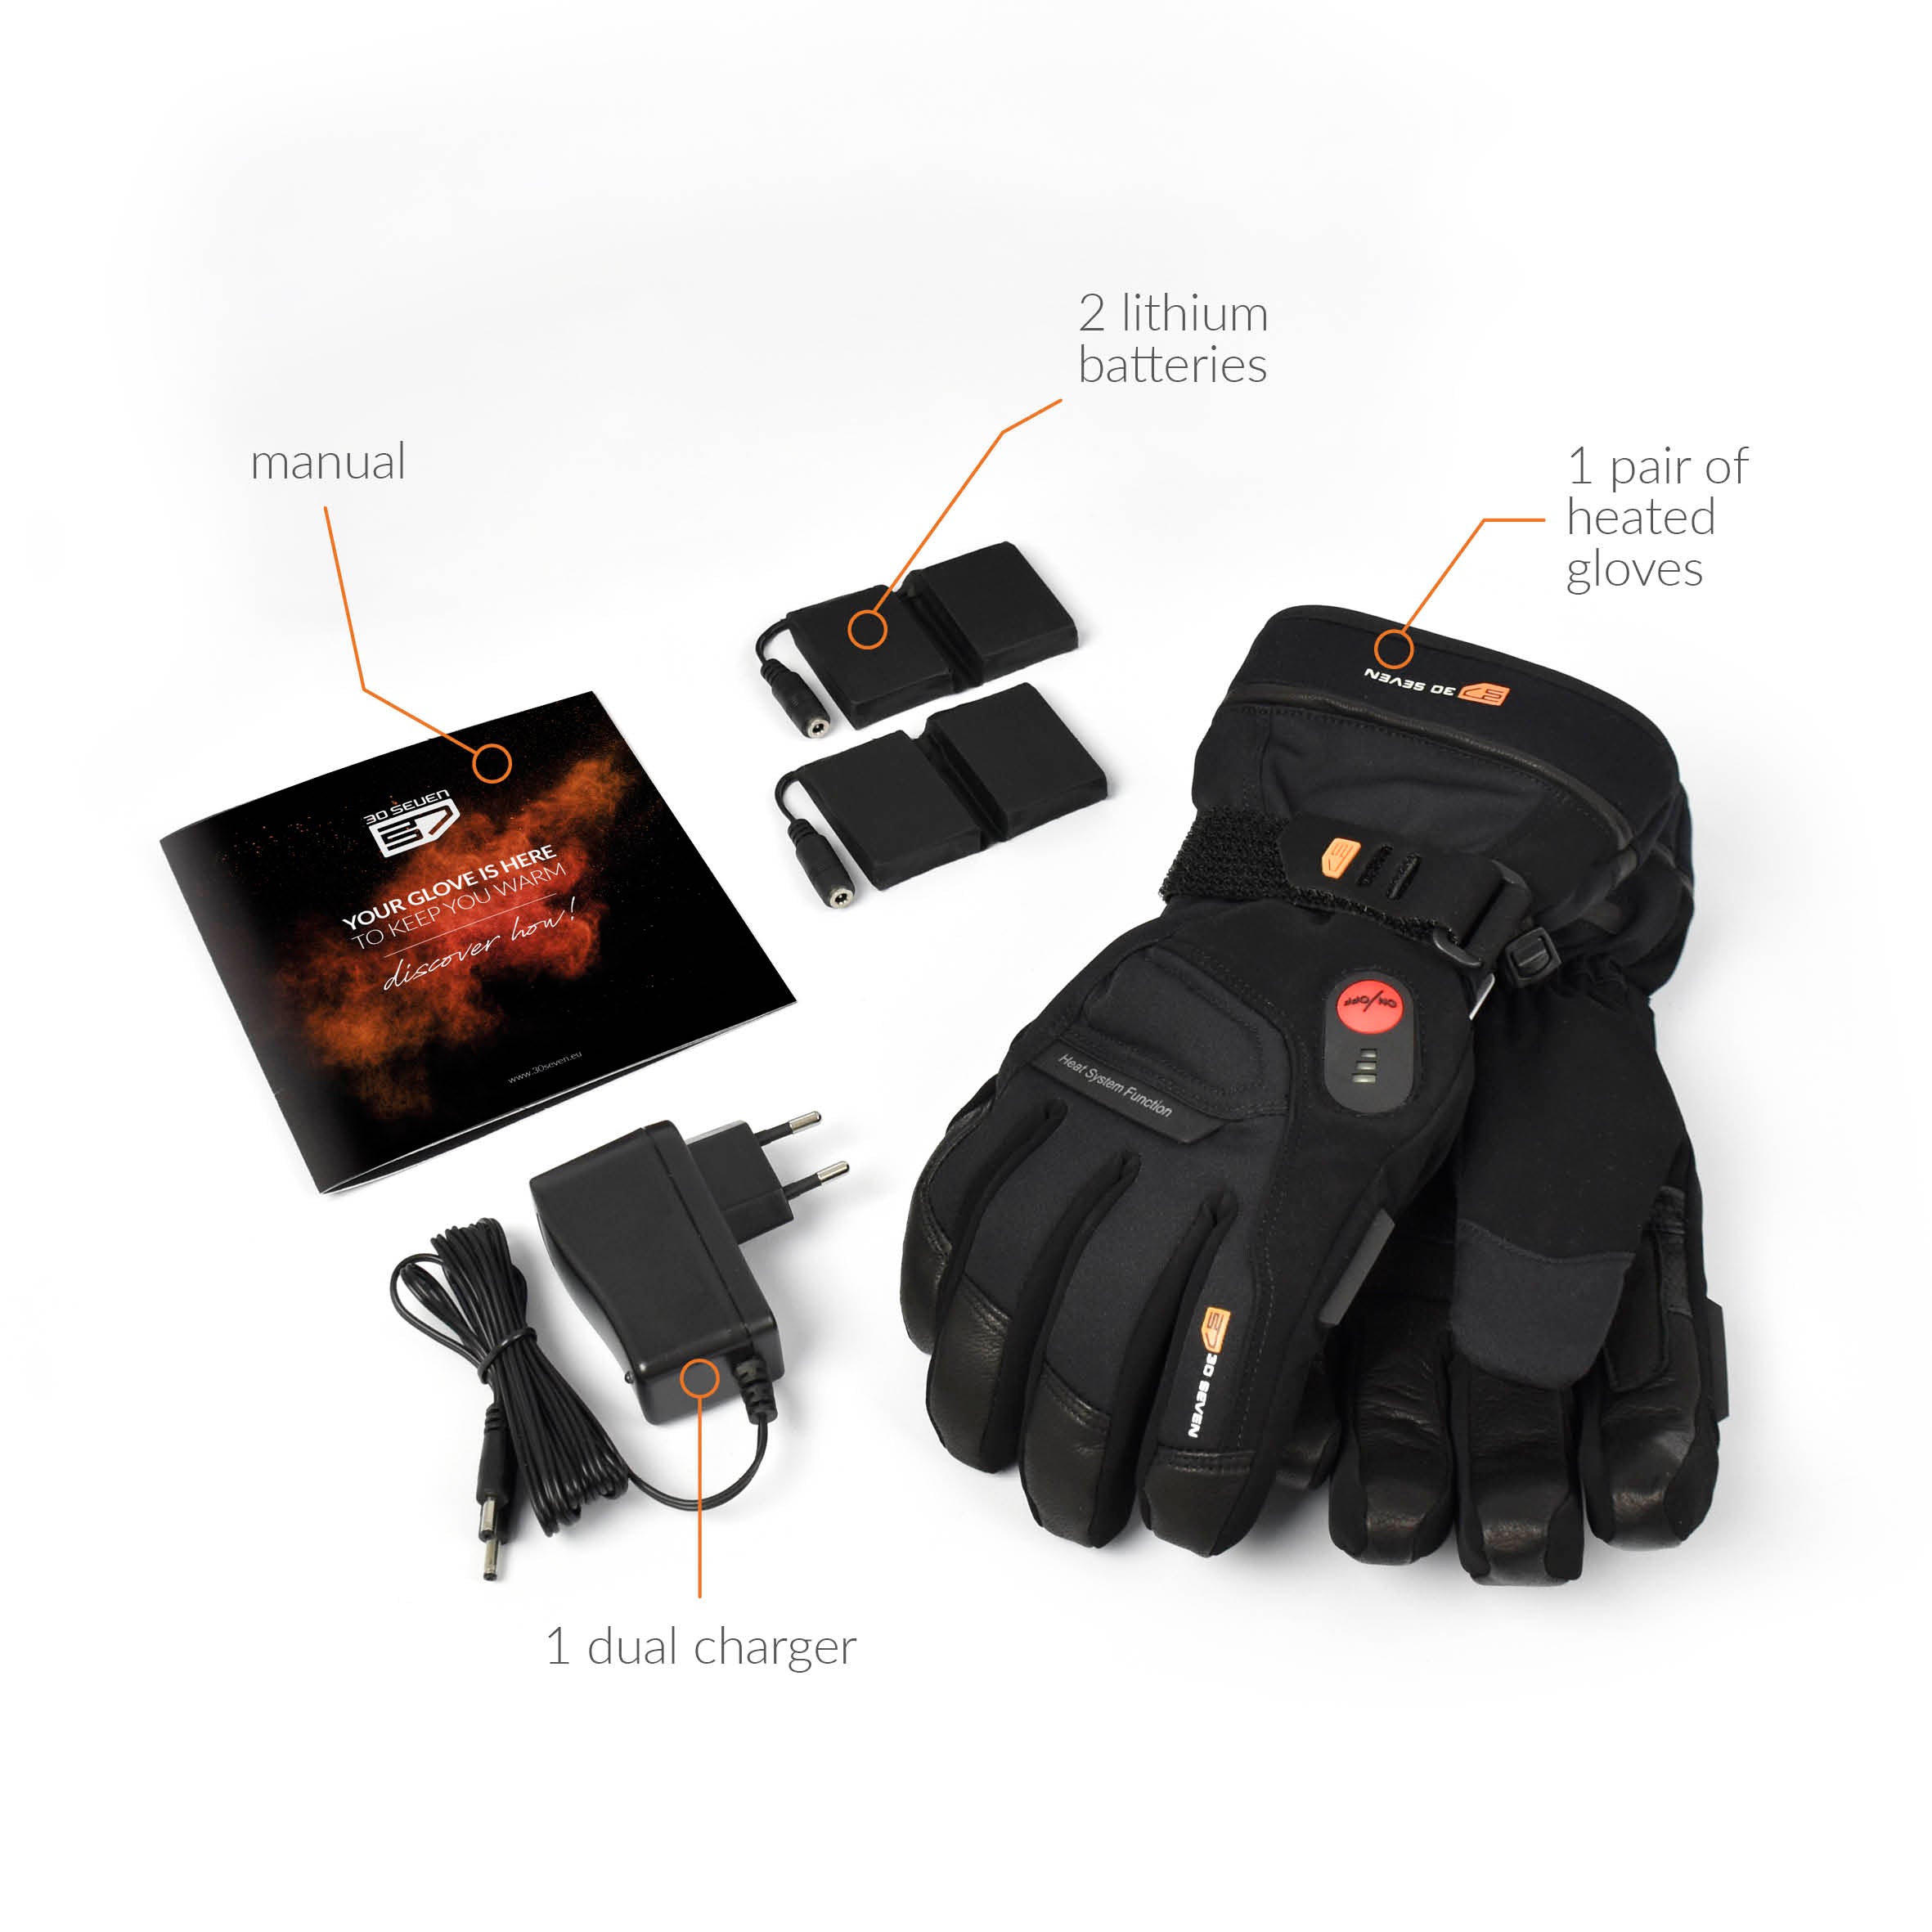 Gants/Mitaines rabattables en molleton Yukon Gear à prise sûre, pochette  chauffe-mains pour la chasse, noir